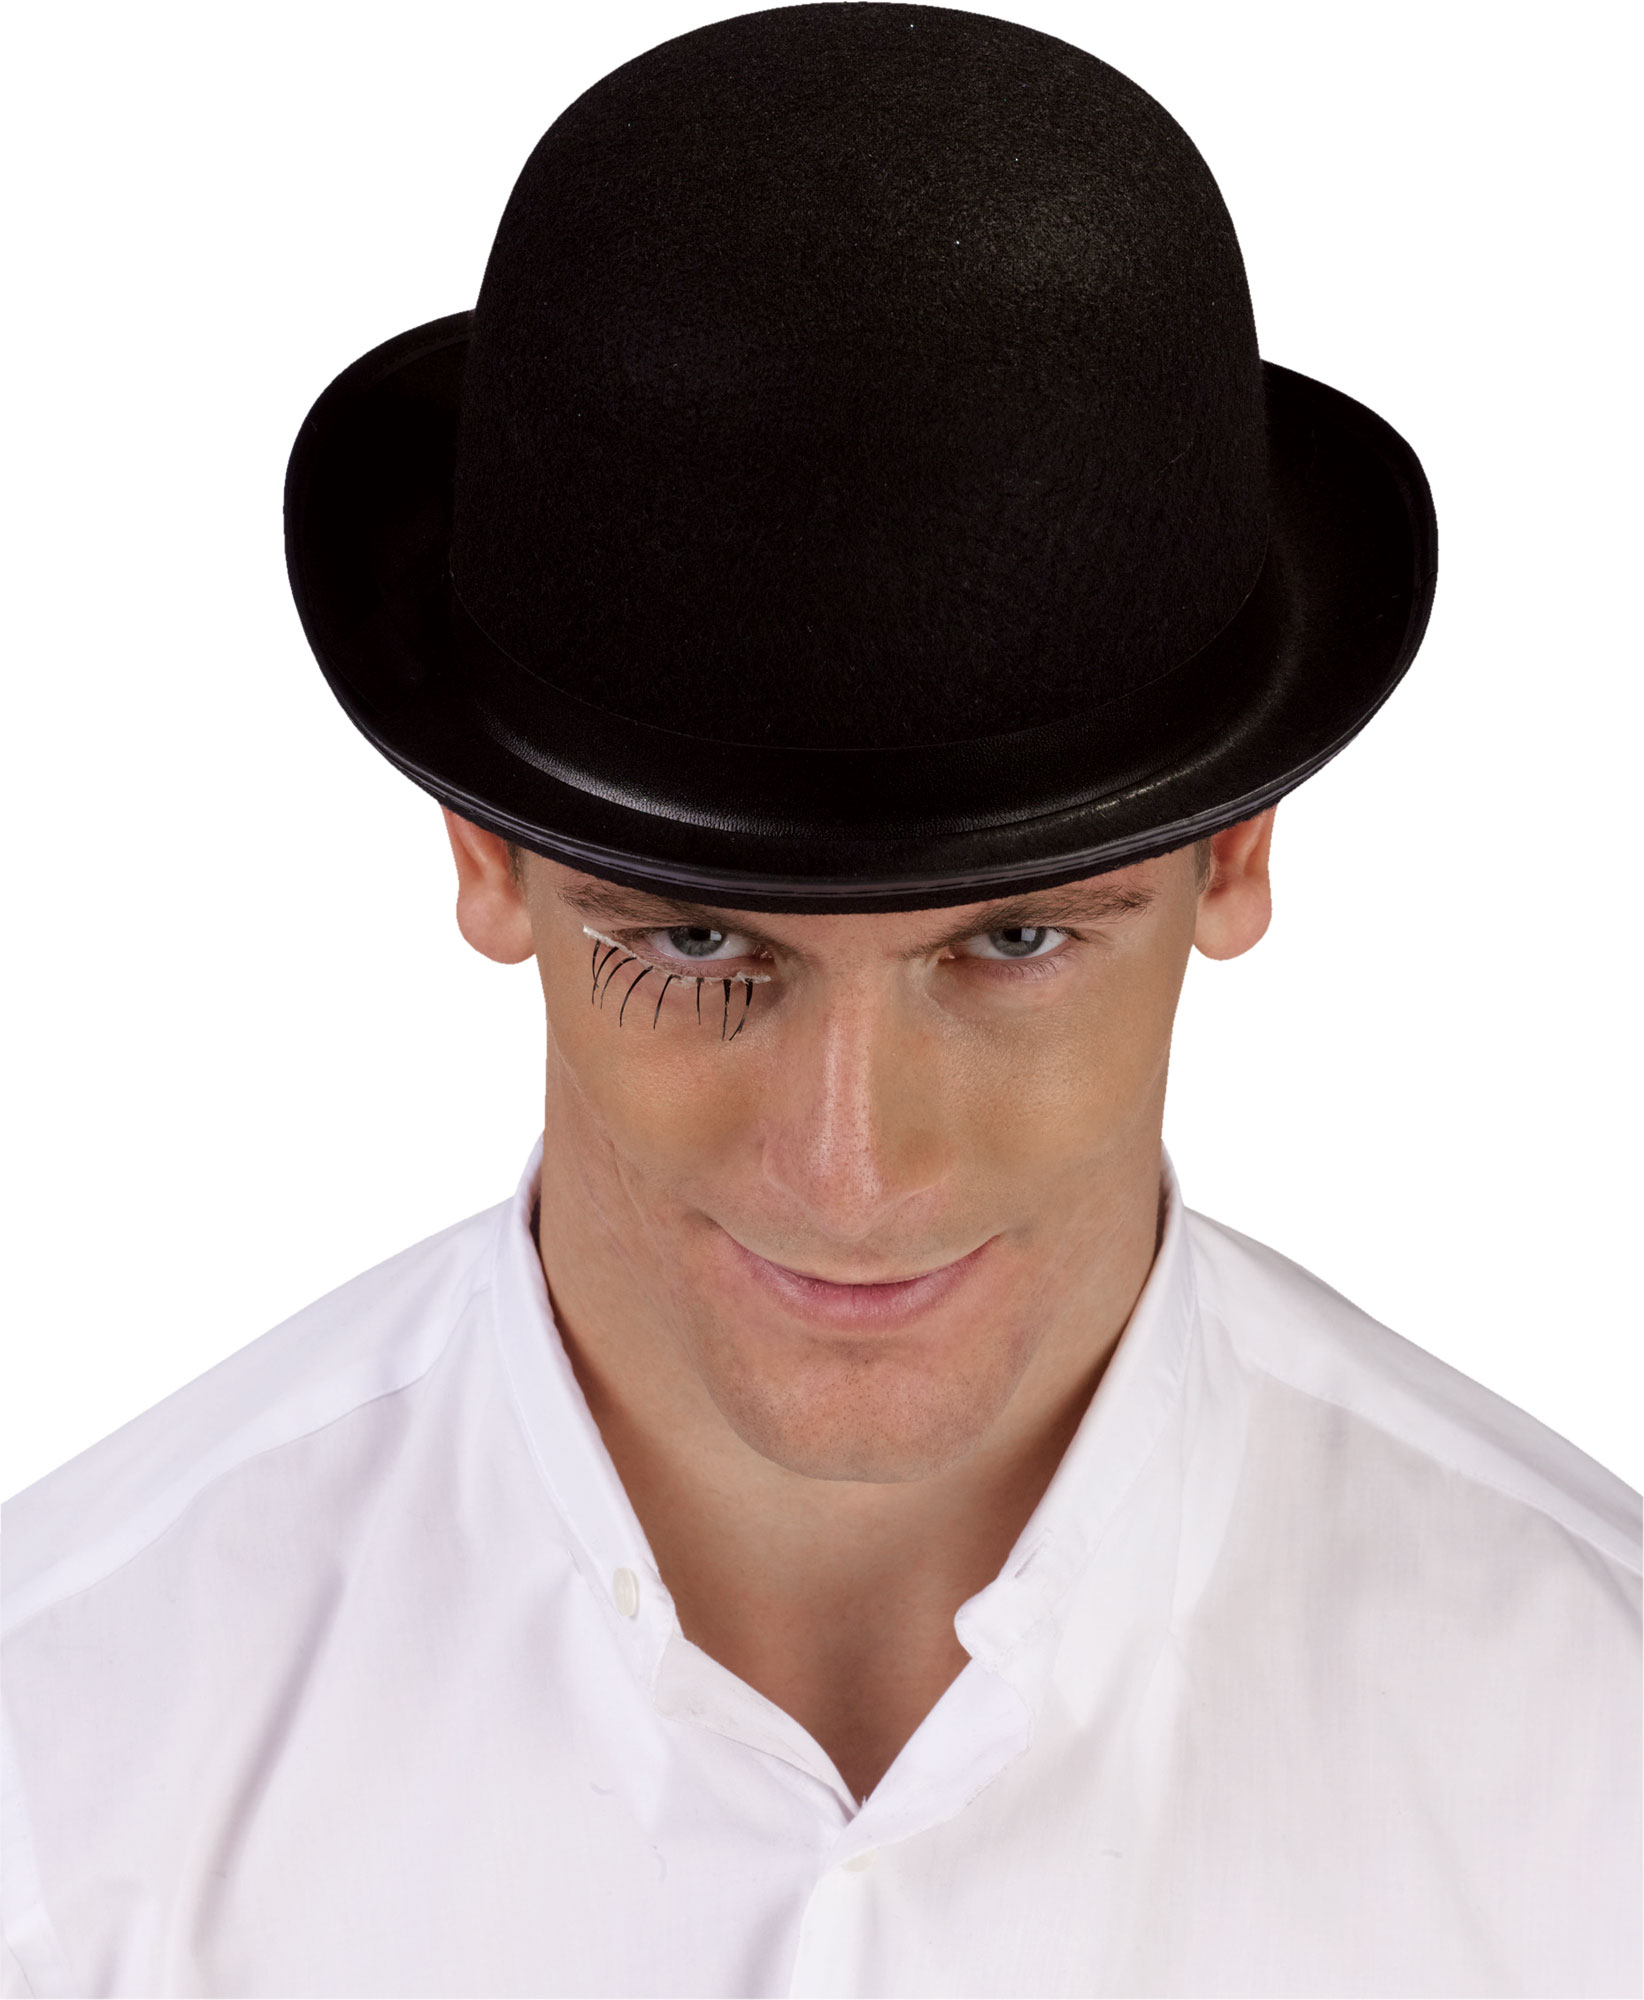 Мужчины со шляпой. Шляпа мужская. Головной убор шляпа мужская. Мужчина в шляпе. Модные мужские шляпы.